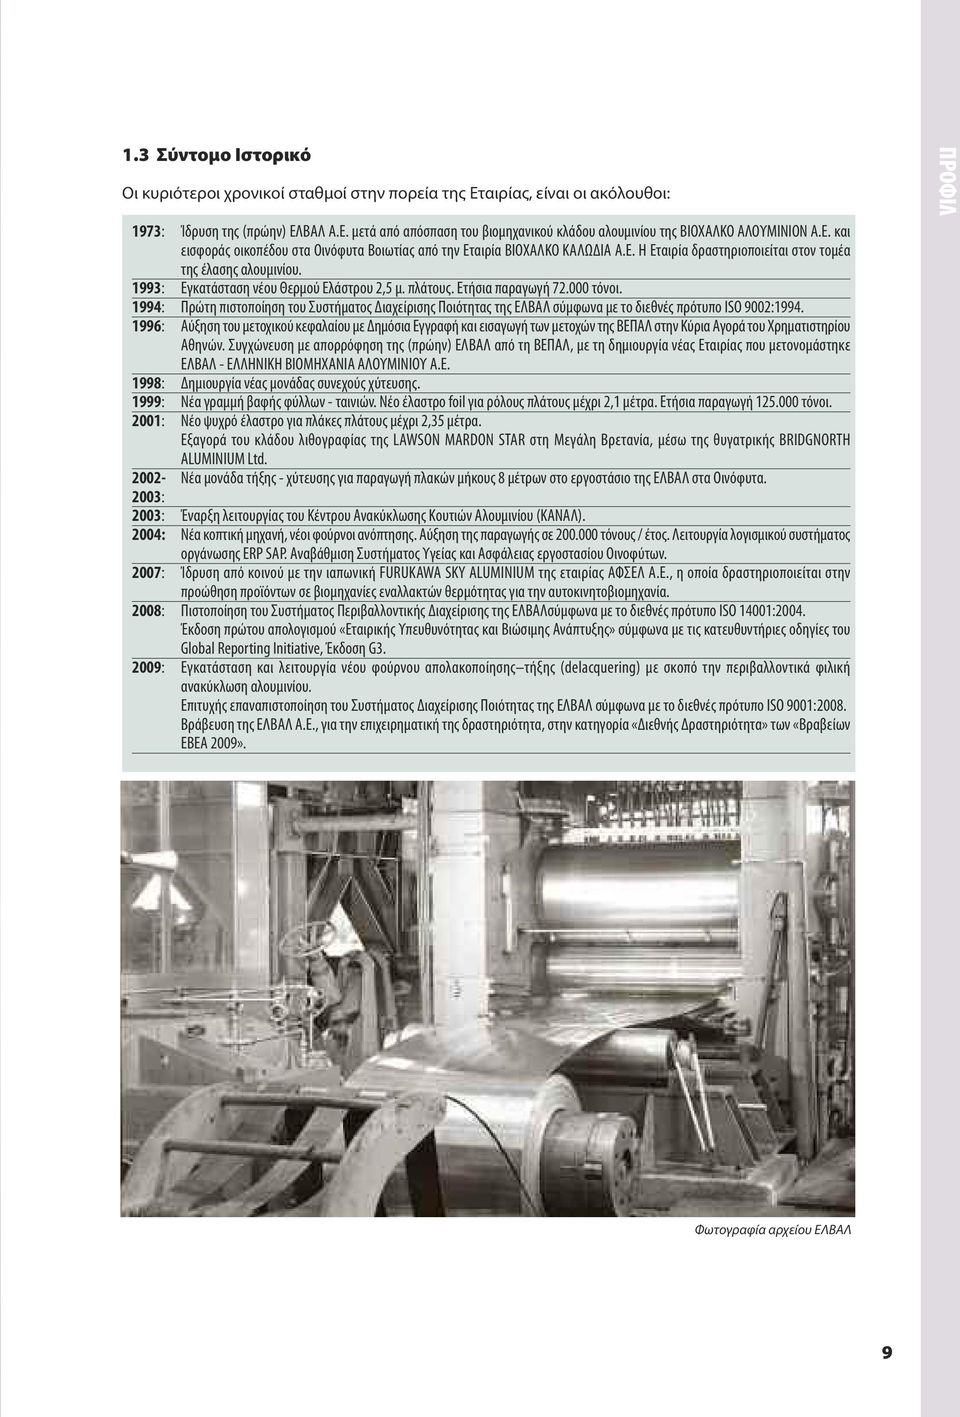 πλάτους. Ετήσια παραγωγή 72.000 τόνοι. 1994: Πρώτη πιστοποίηση του Συστήματος Διαχείρισης Ποιότητας της ΕΛΒΑΛ σύμφωνα με το διεθνές πρότυπο ISO 9002:1994.